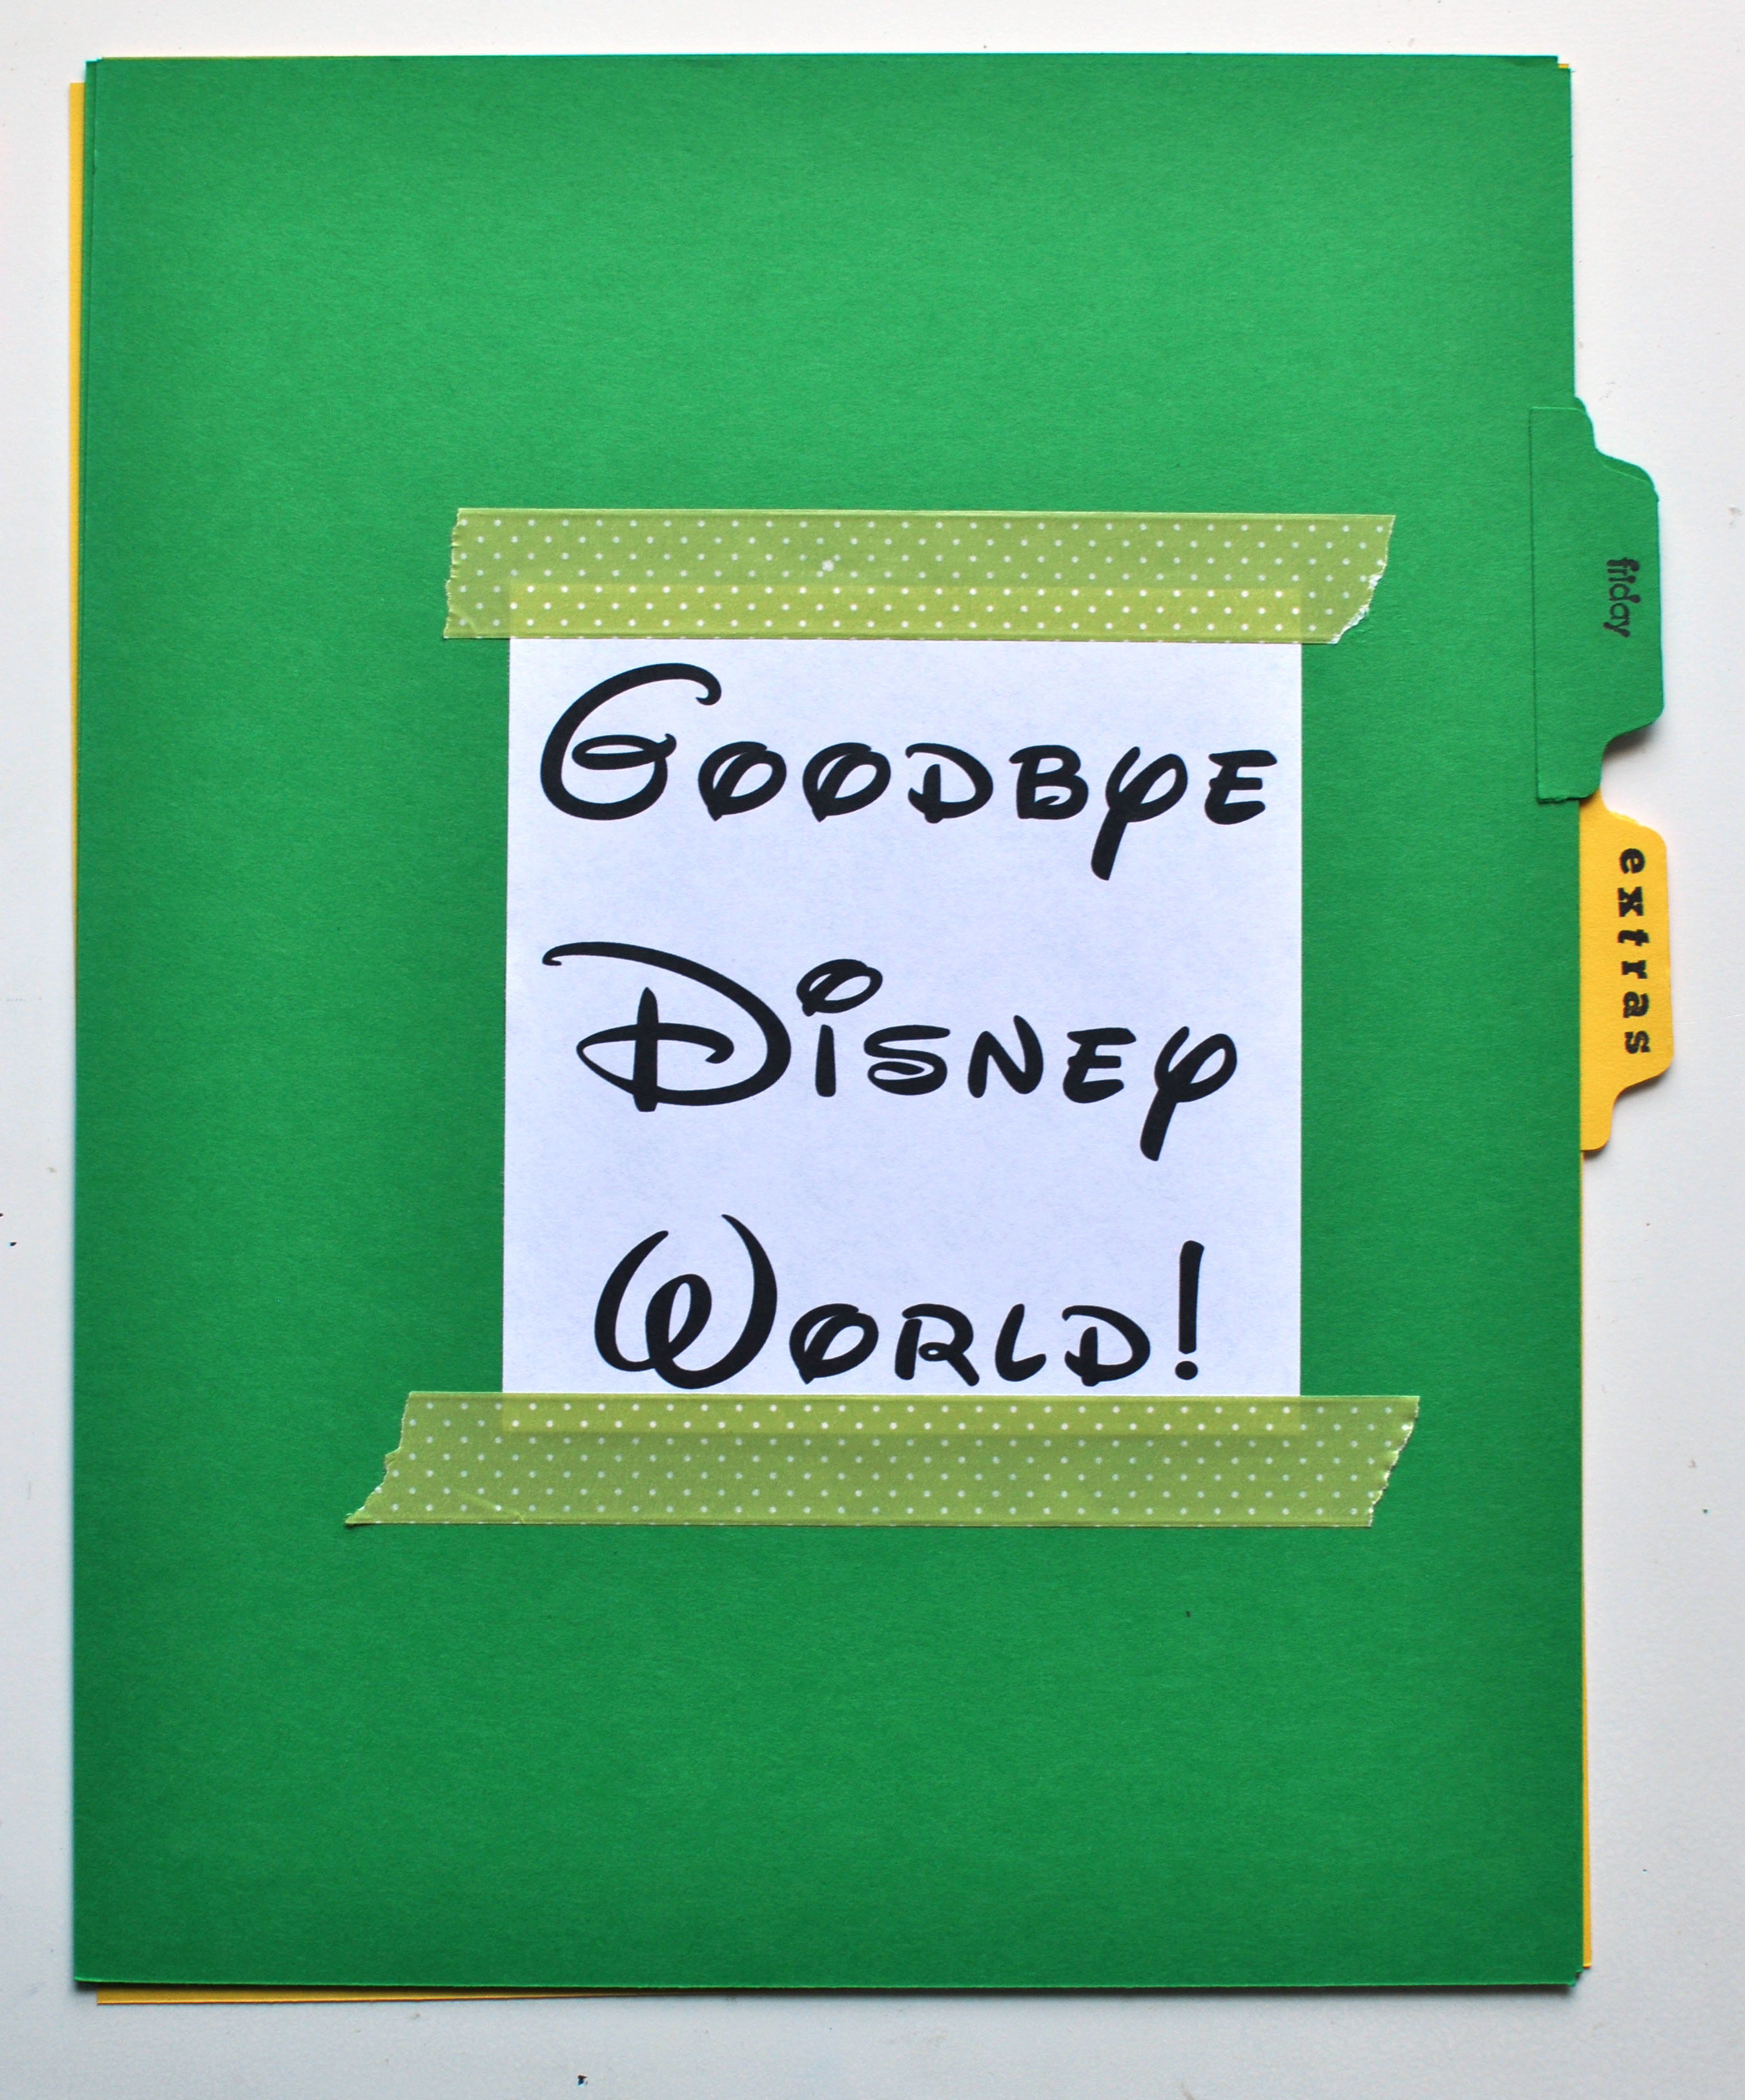 Goodbye Party Clipart Goodbye Disney World 